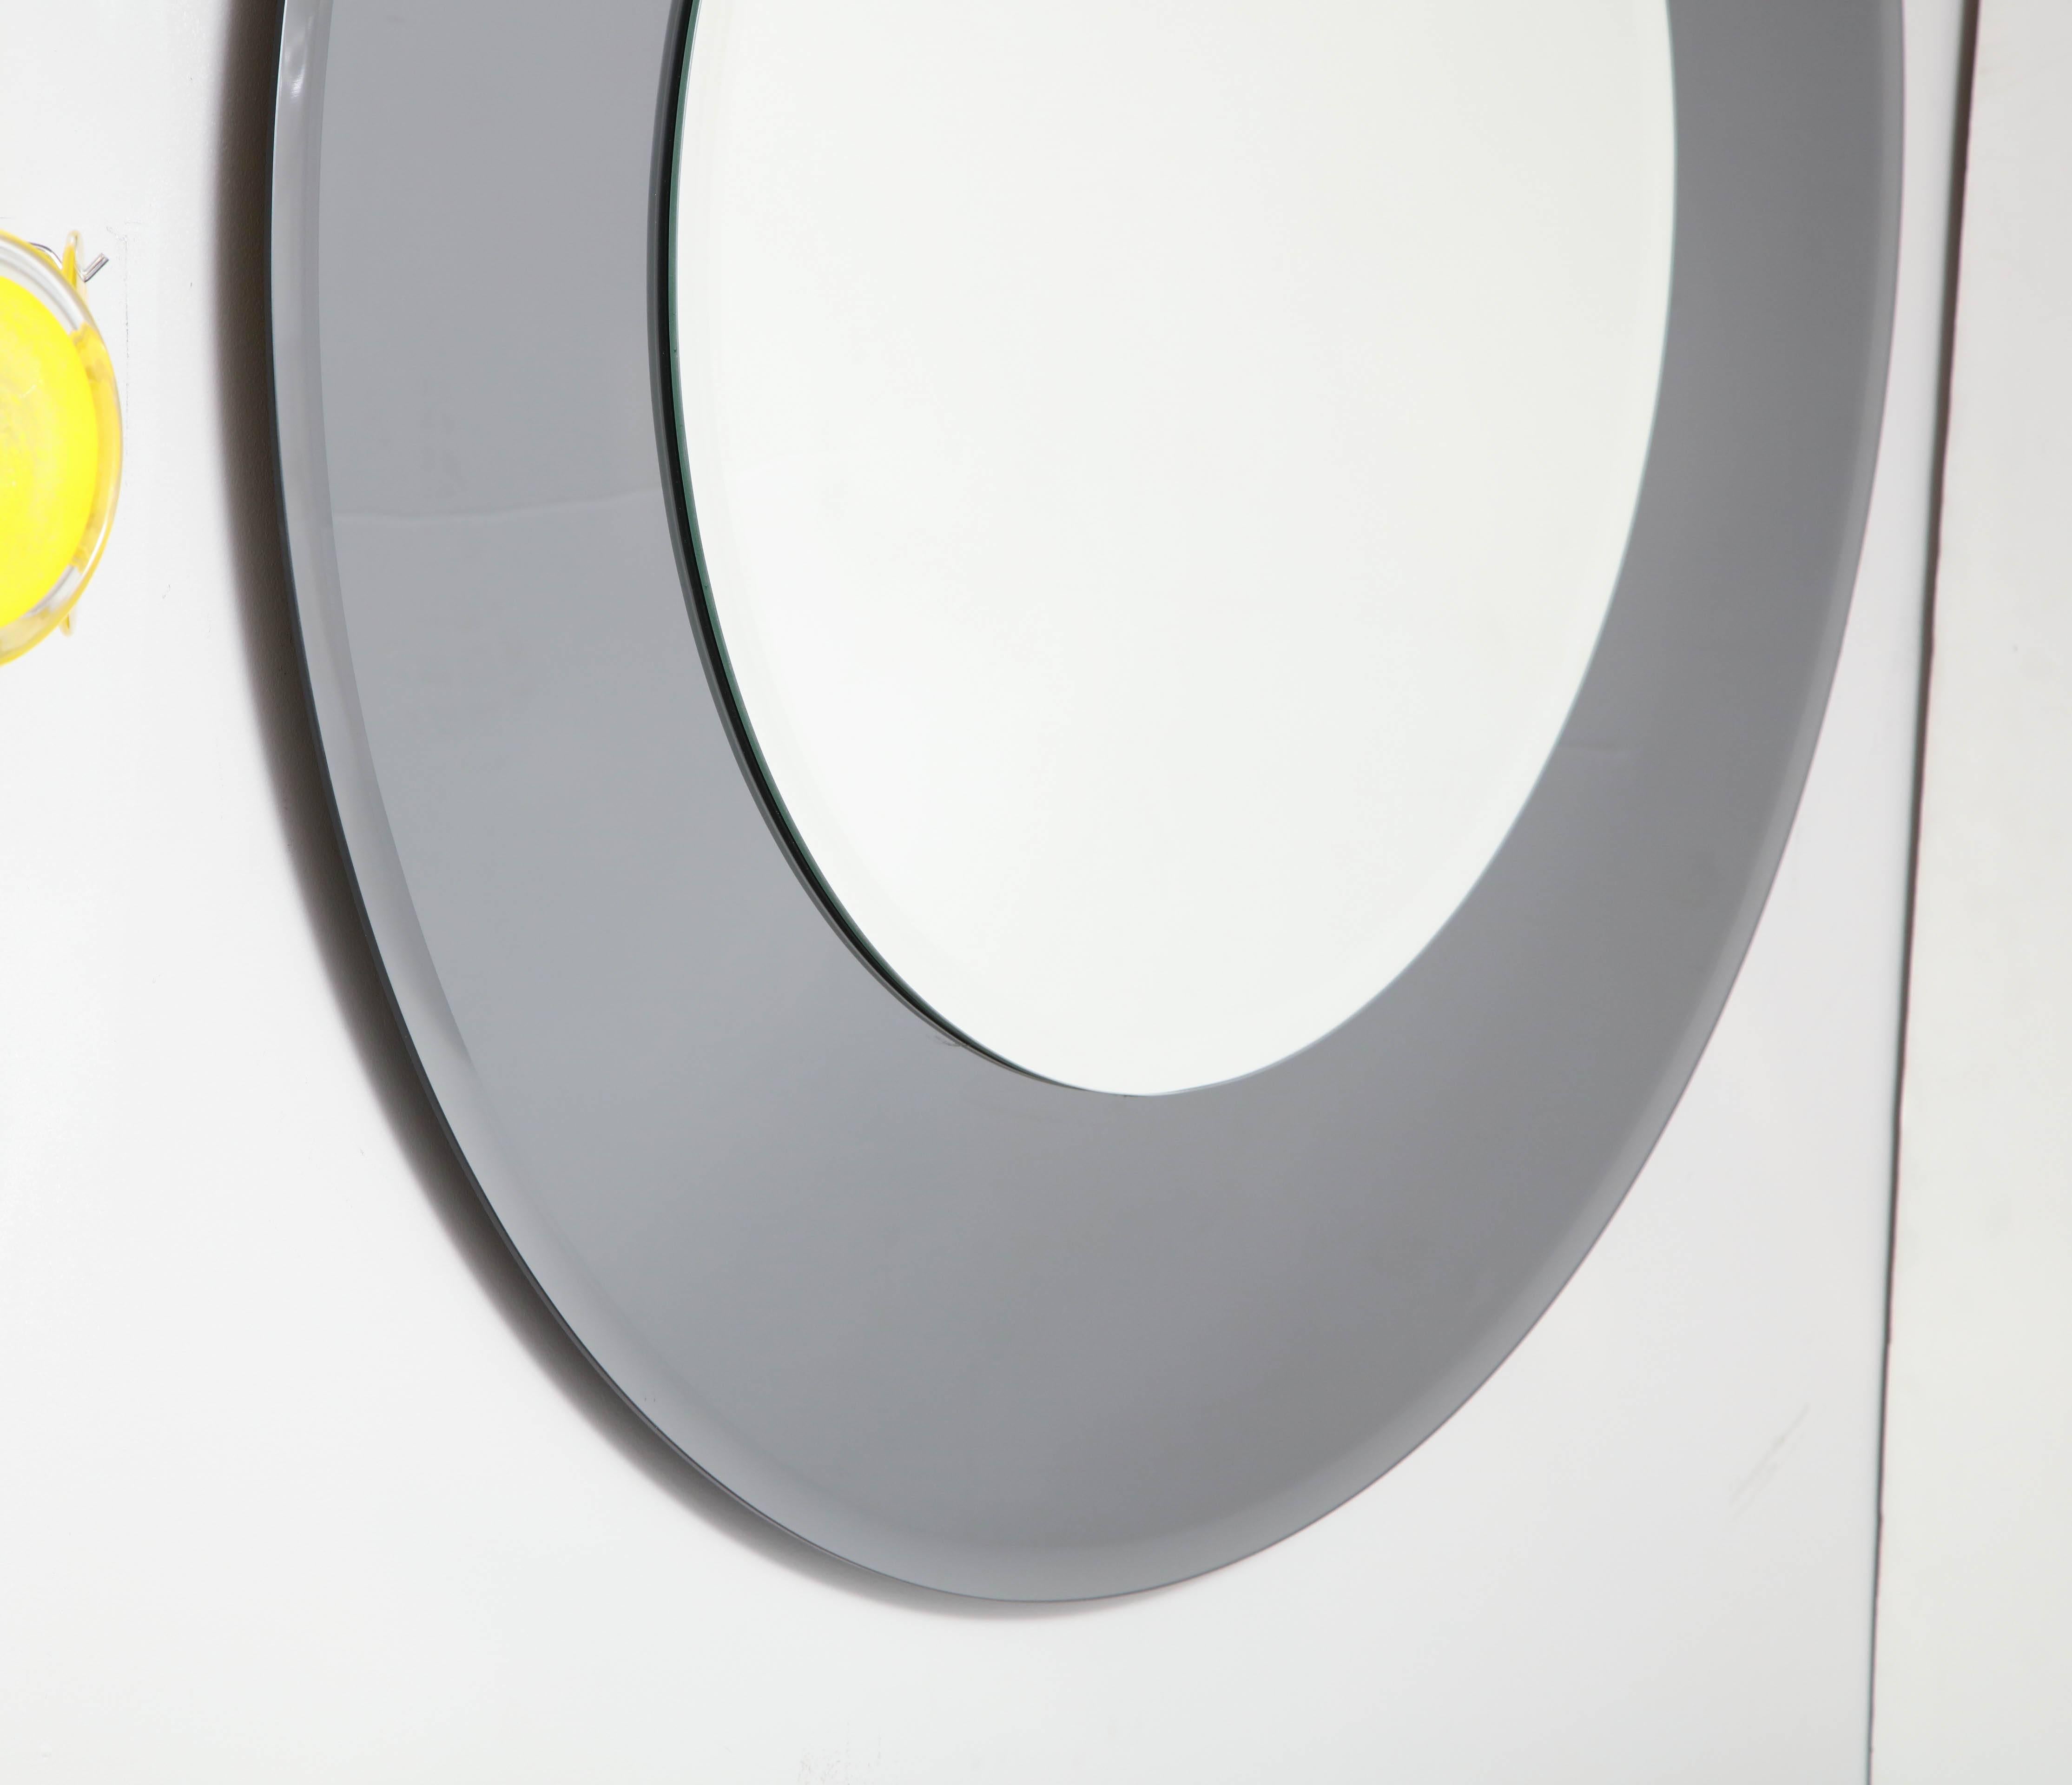 Großer, abgeschrägter runder Spiegel mit Rauchglasrand. Der mittlere Spiegel hat einen Durchmesser von 30